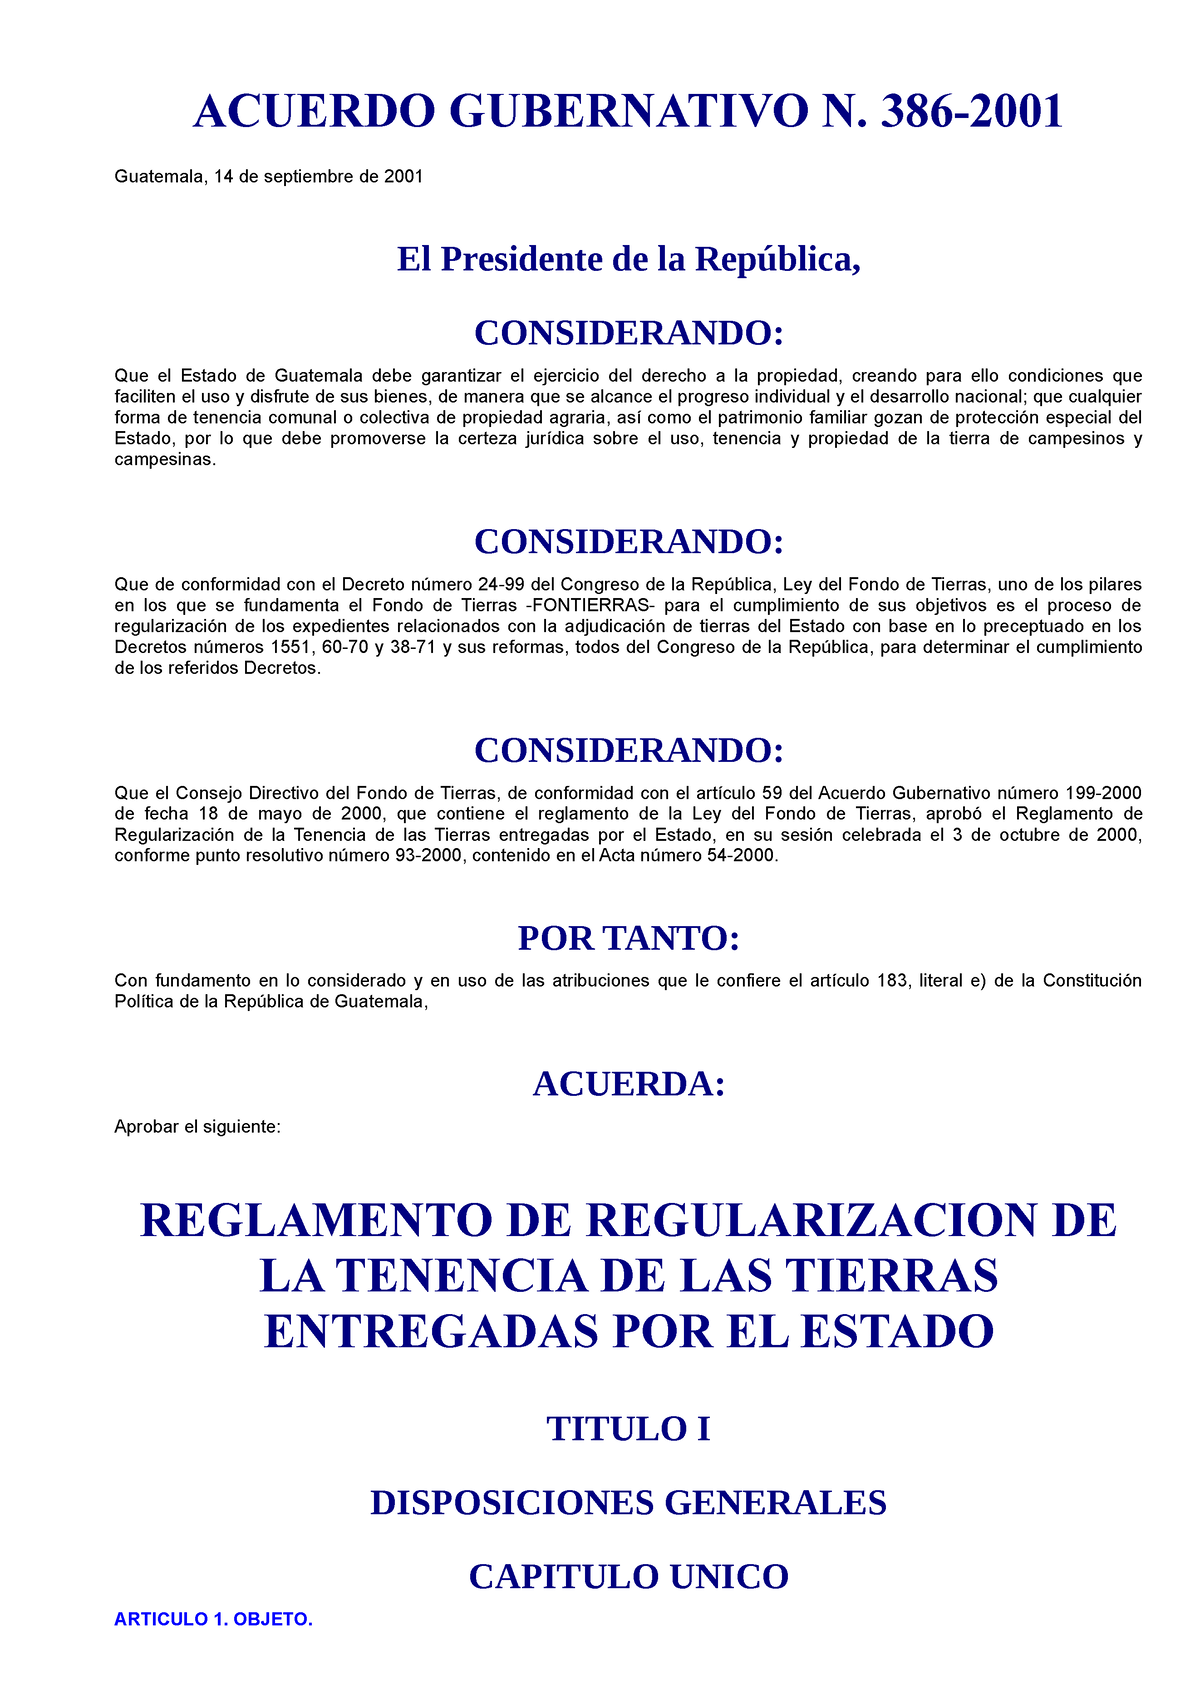 Acuerdo Gubernativo 386 2001 Reglamento De Regularización De La Tenencia De Las Tierras 8678